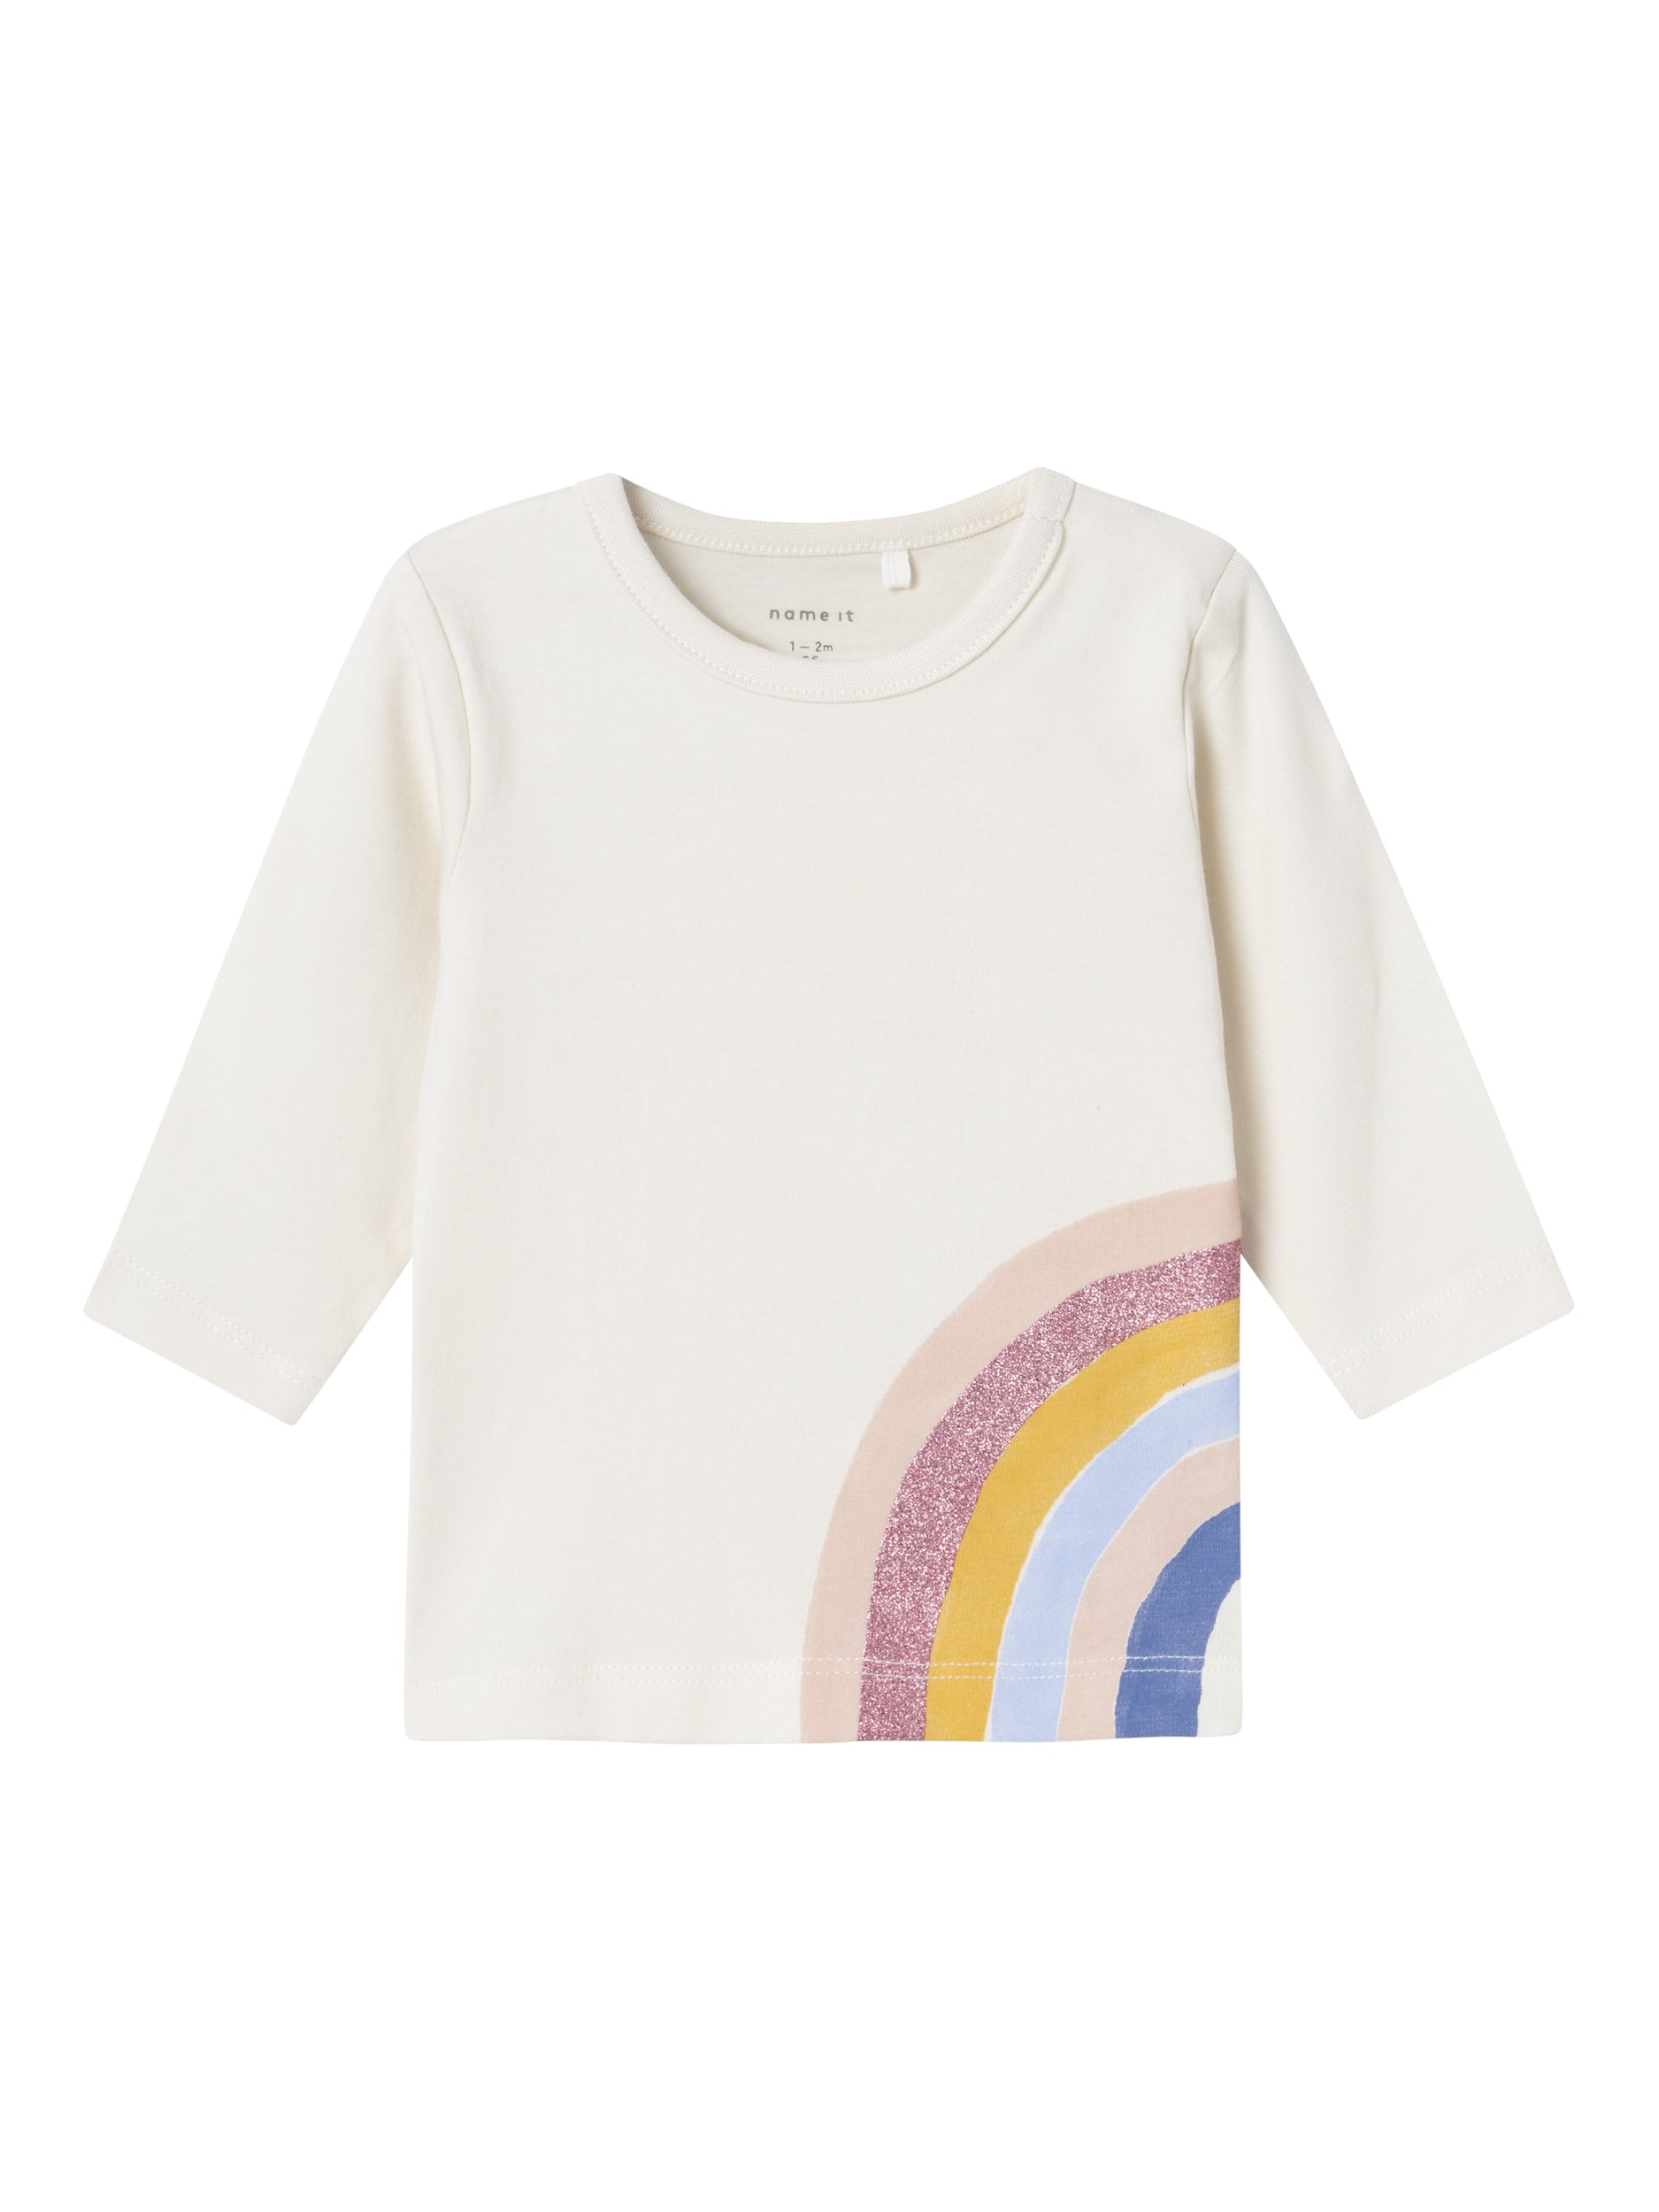 Name It t-shirt kids panna con stampa arcobaleno